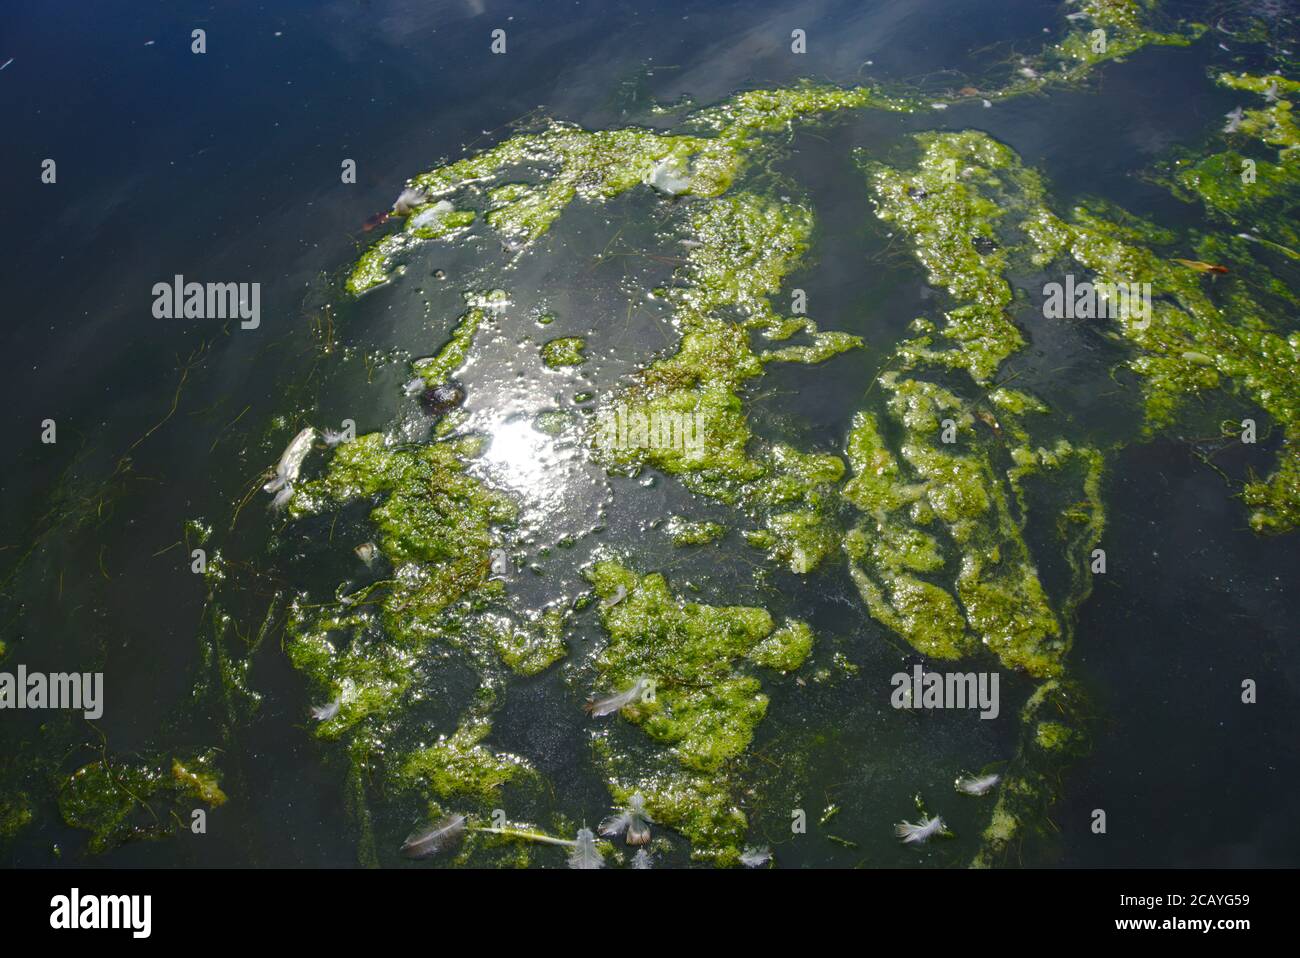 Prolifération d'algues, plumes d'oiseaux jetées et lumière du soleil réfléchie à la surface de Gunknowe Loch, Tweedbank, Roxburghshire, Scottish Borders, Royaume-Uni. Banque D'Images